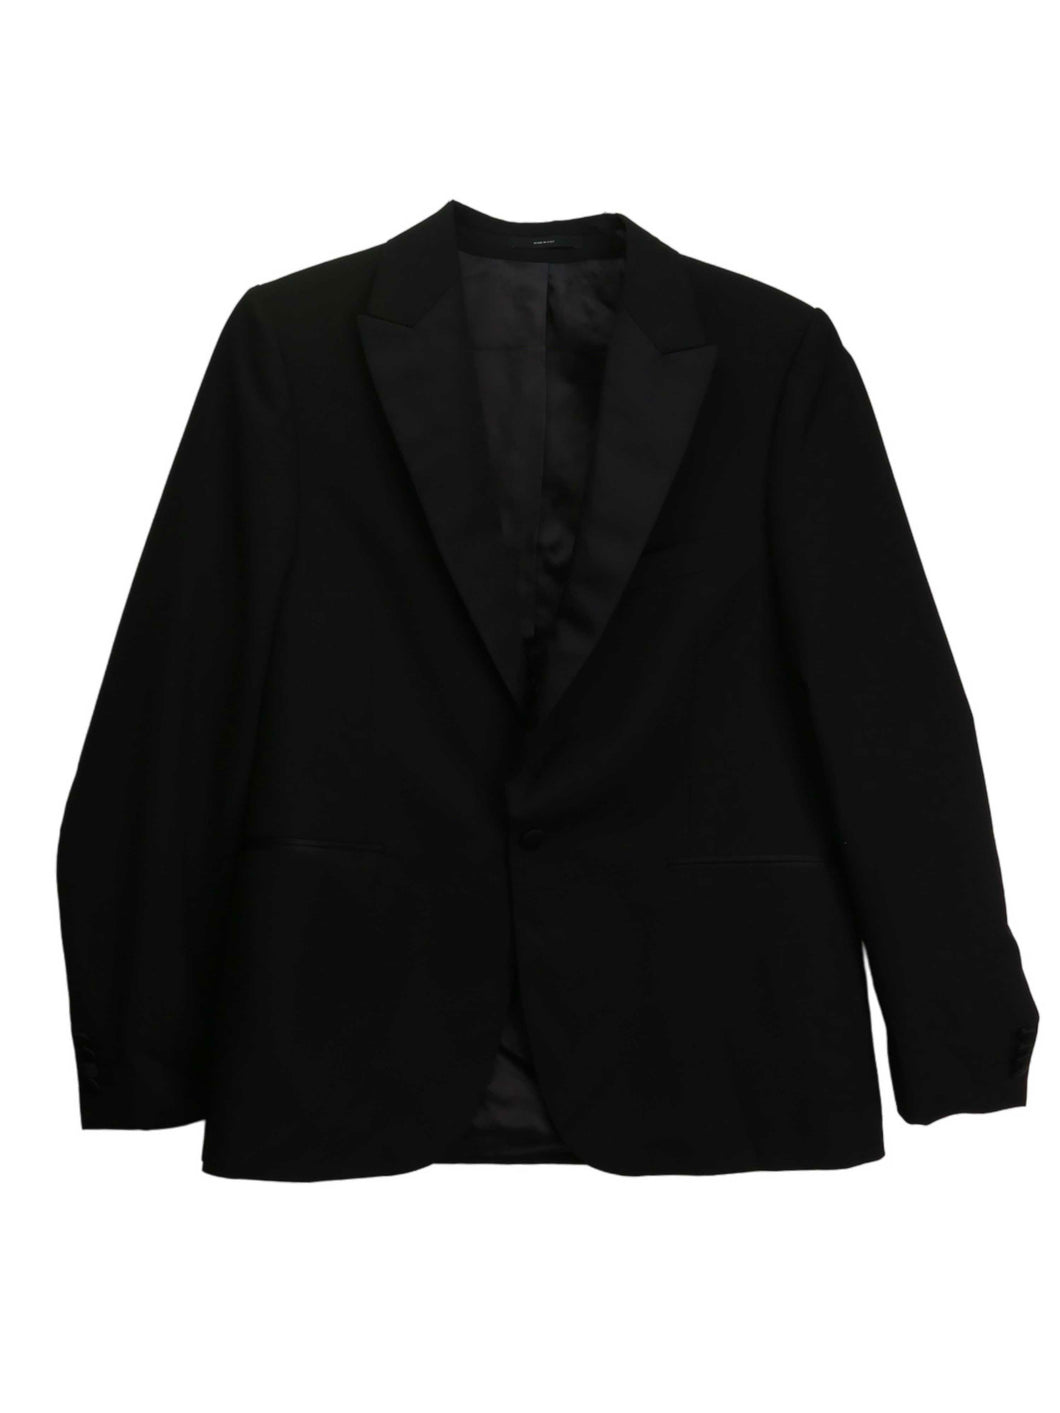 Paul Smith Men's Black Gents Tailored Fit Evening Suit - 42 US / 52 EU